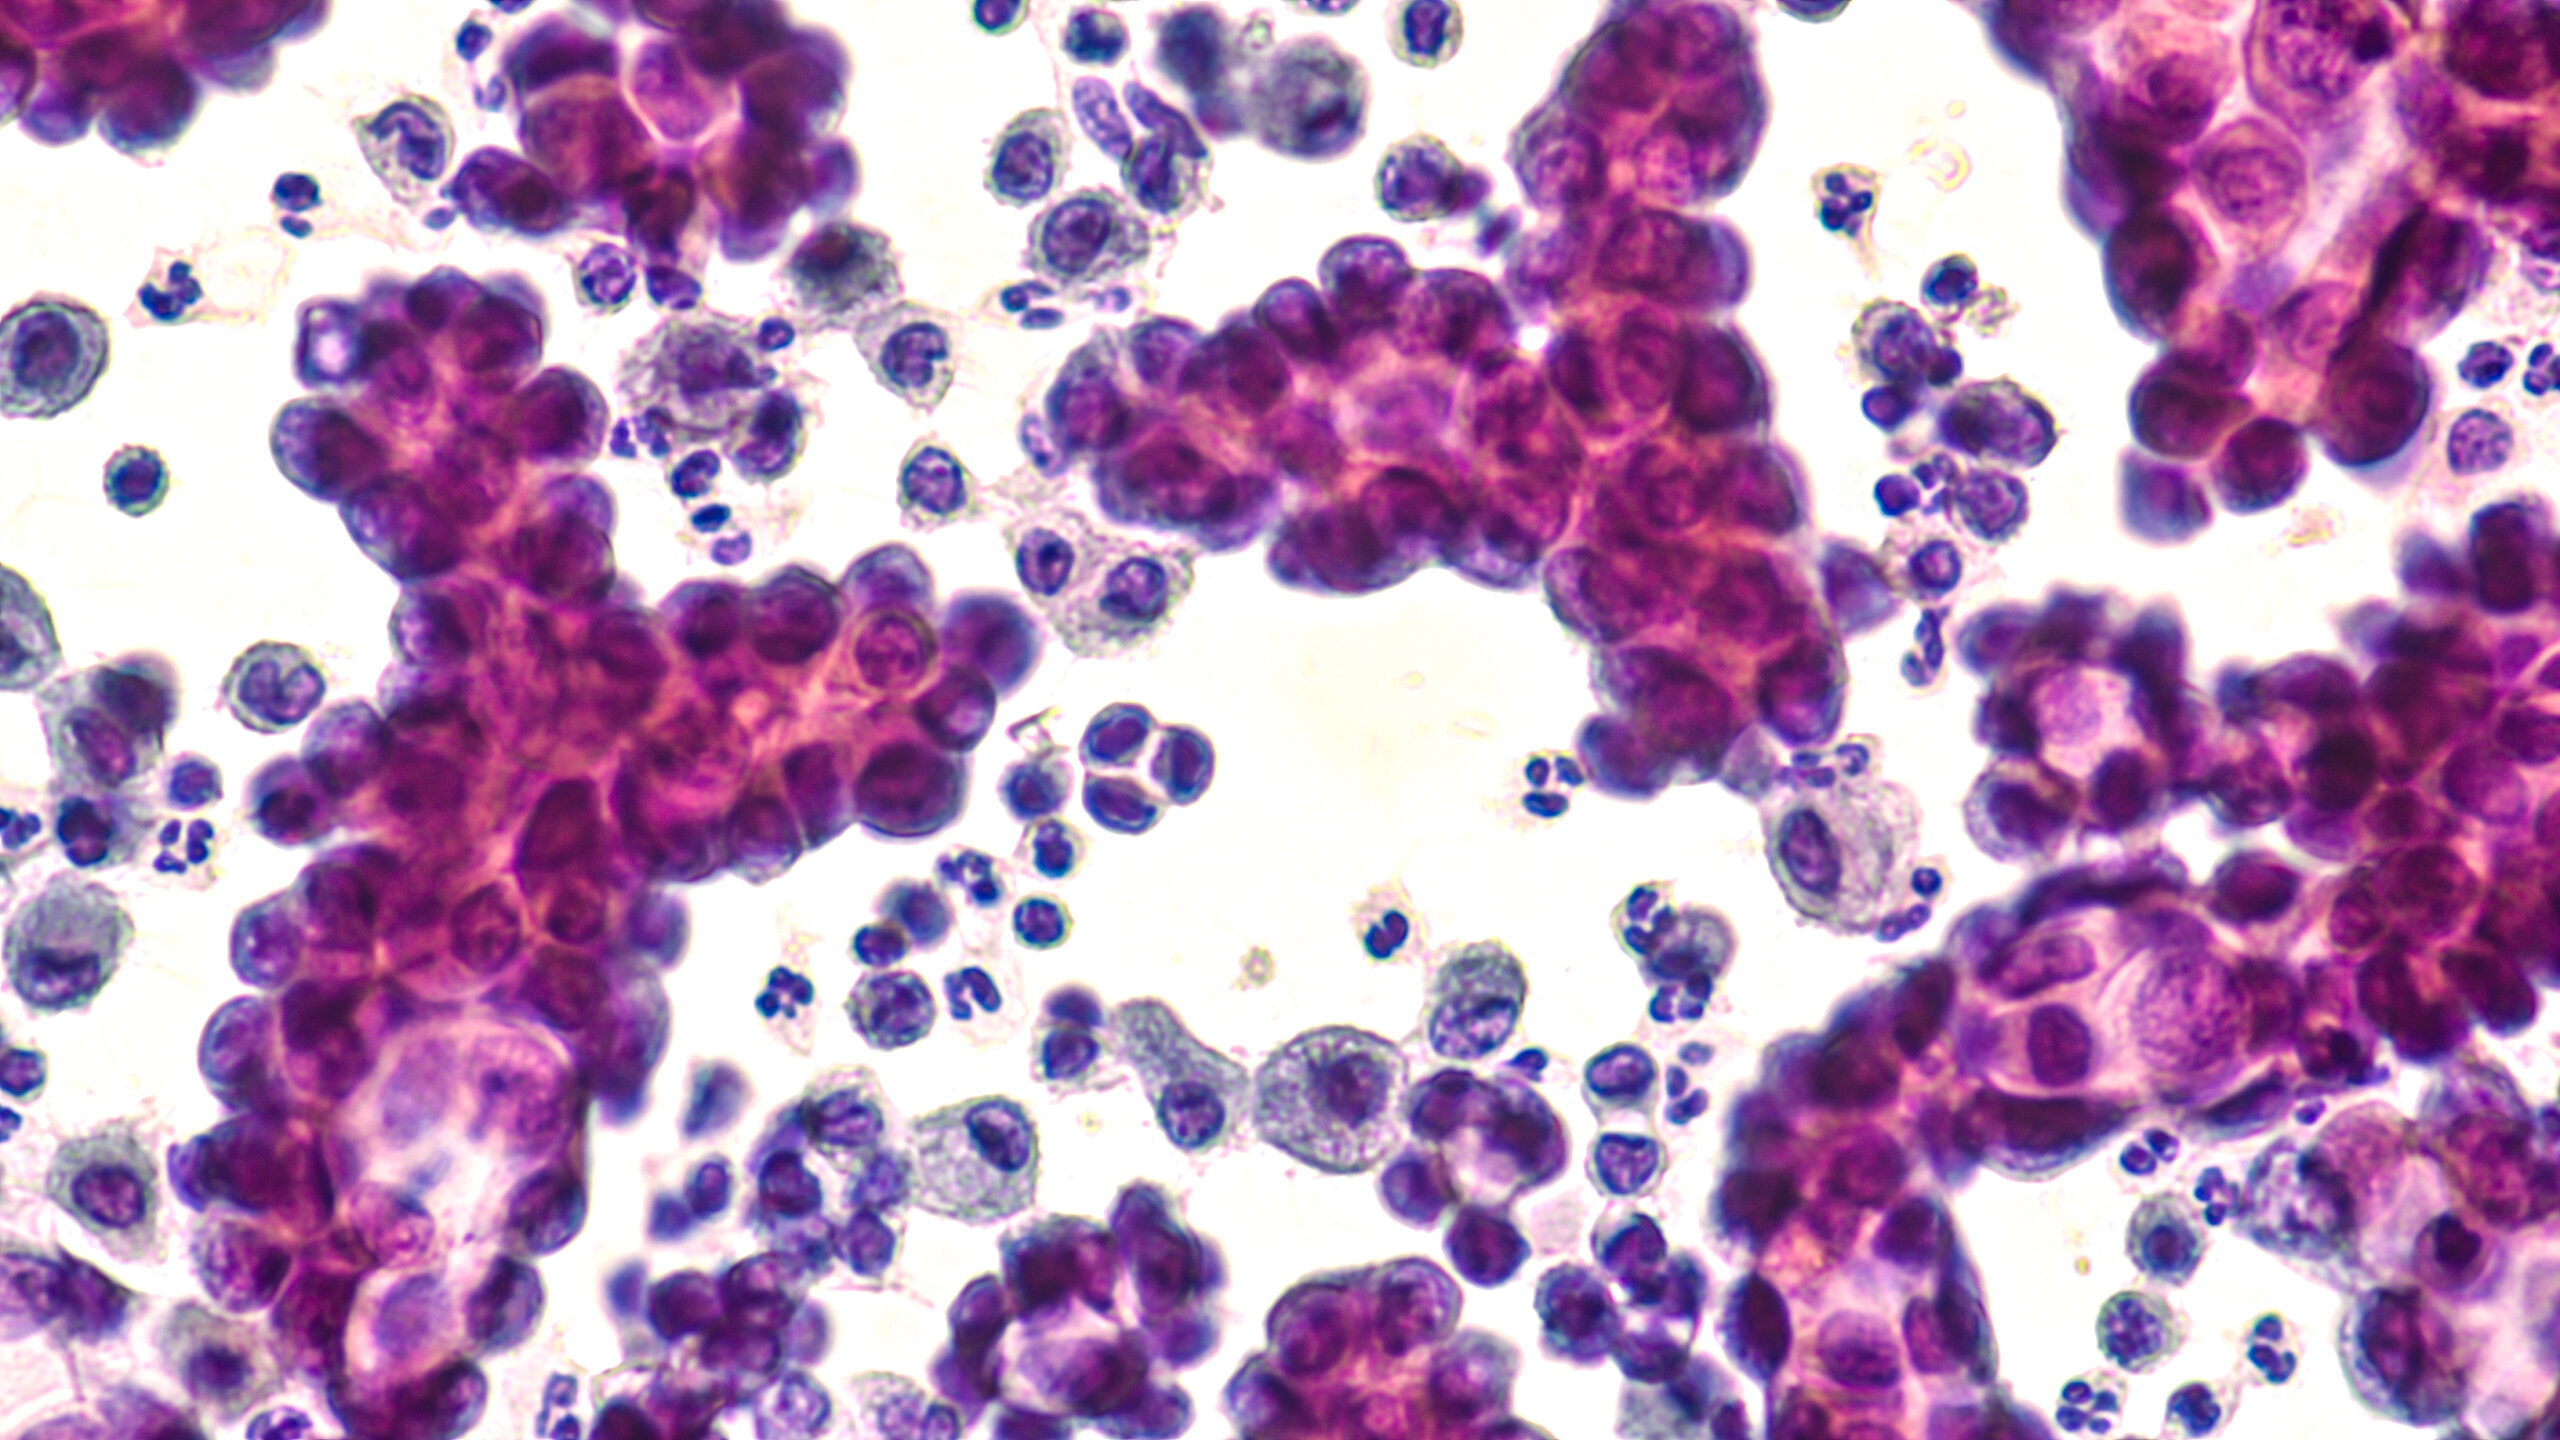 Non small cell lung cancer cells through a microscope.